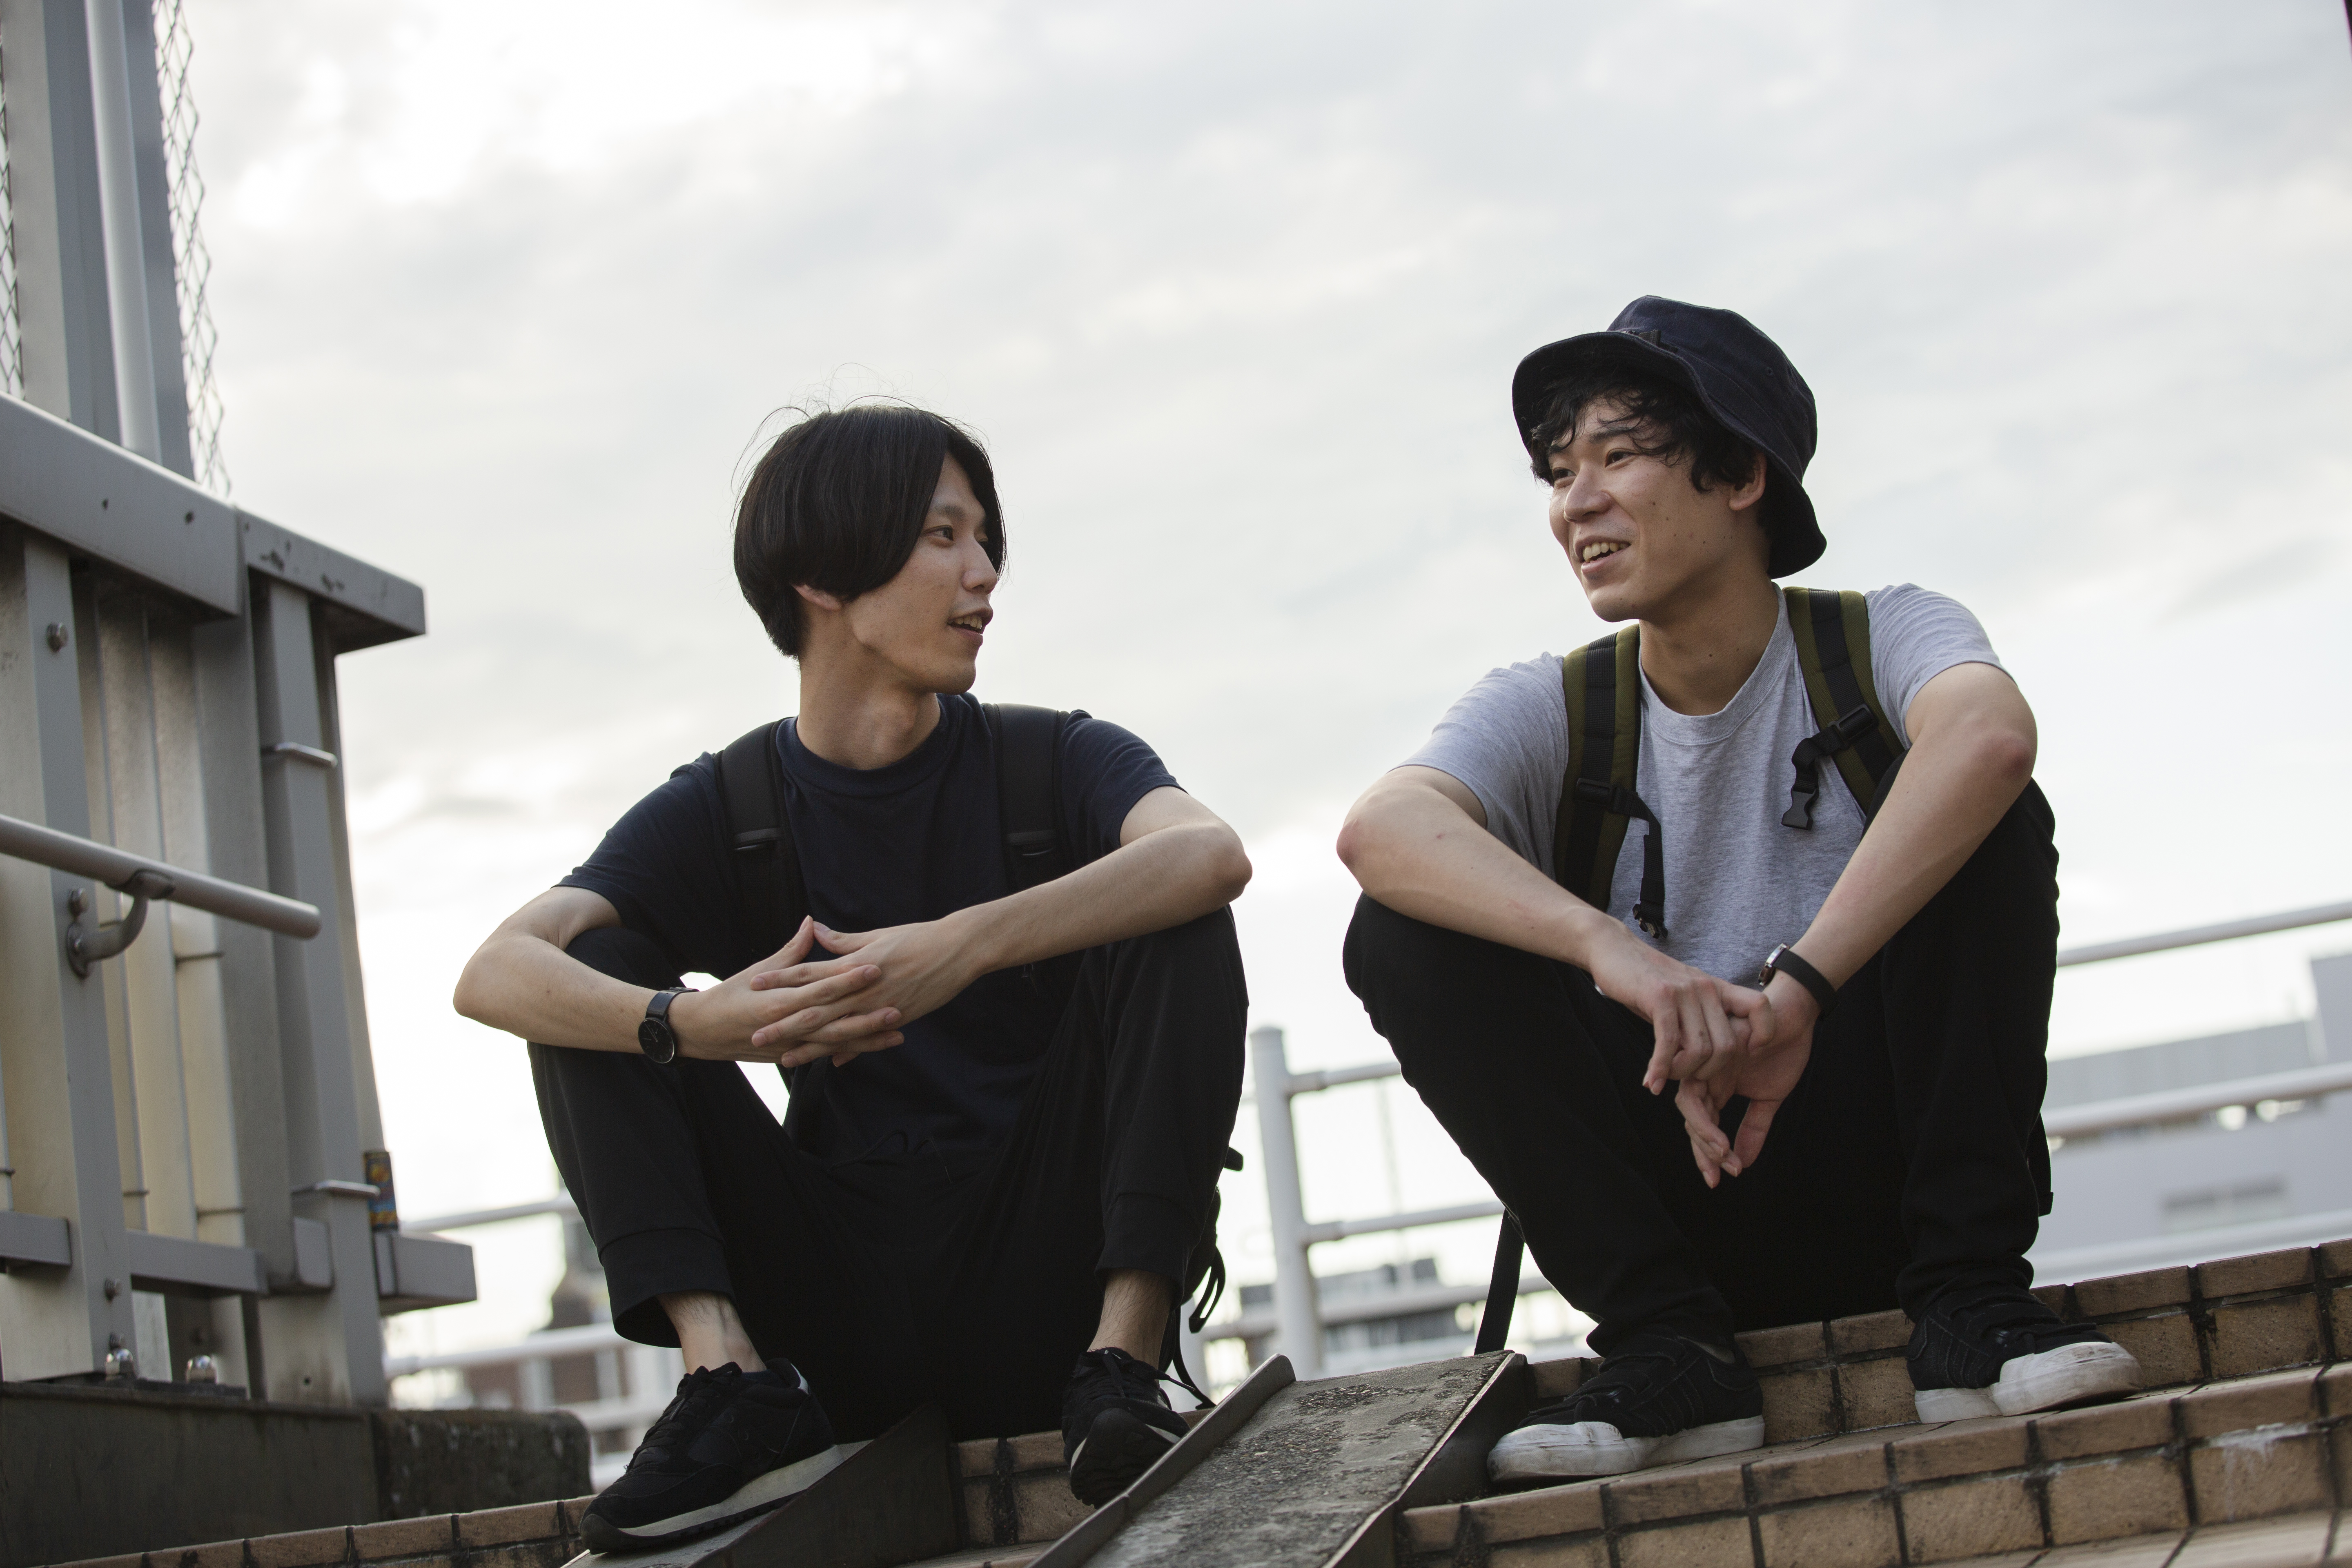 Zwei junge asiatische Männer, die auf einem Dach sitzen und sich unterhalten | Quelle: Getty Images